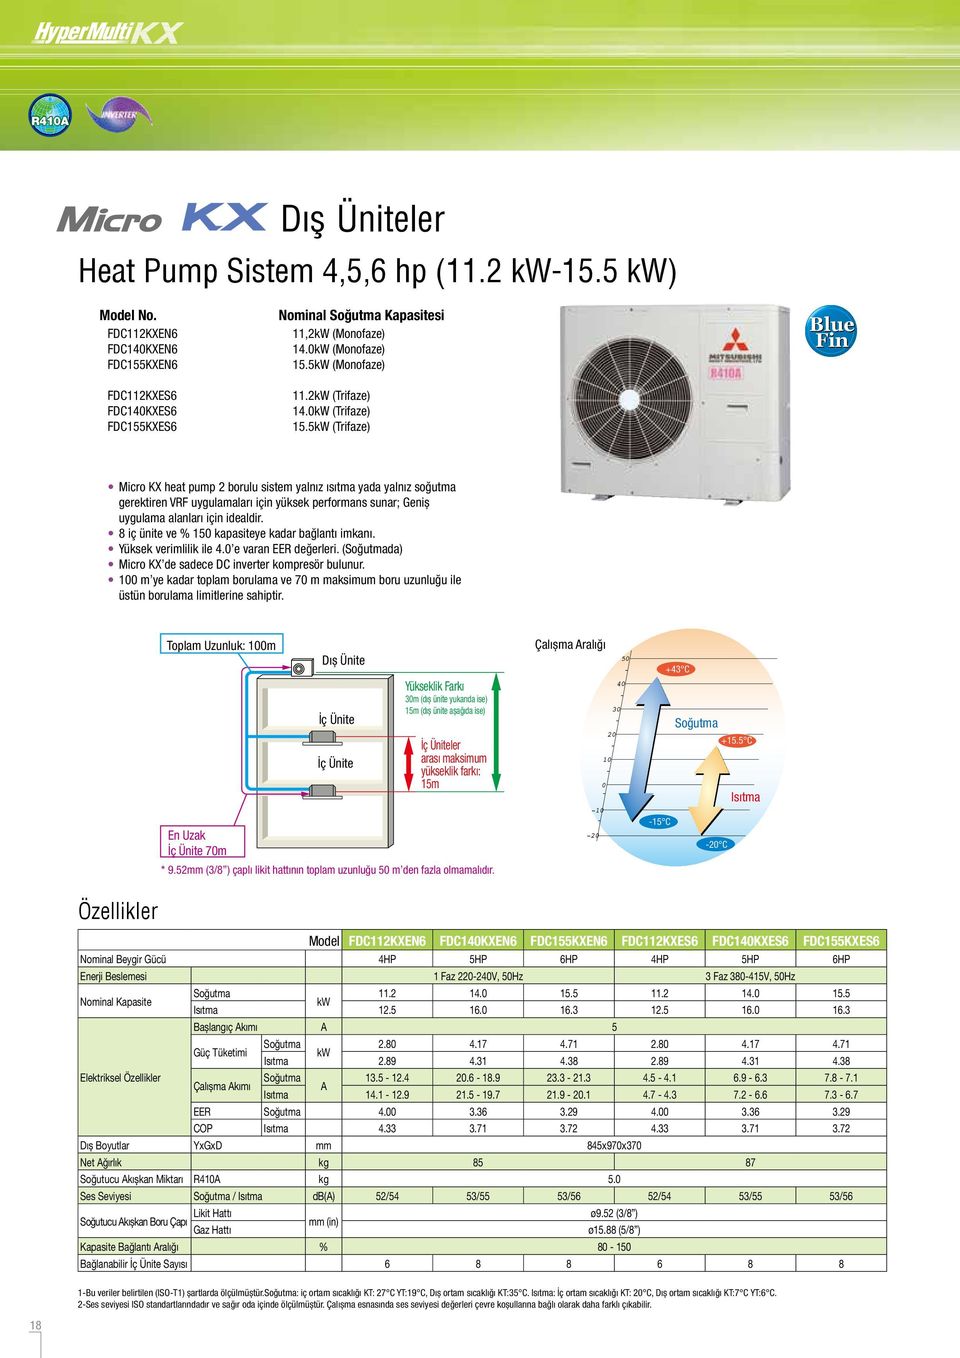 5 (Trifaze) Micro KX heat pump 2 borulu sistem yalnız ısıtma yada yalnız soğutma gerektiren VRF uygulamaları için yüksek performans sunar; Geniş uygulama alanları için idealdir.